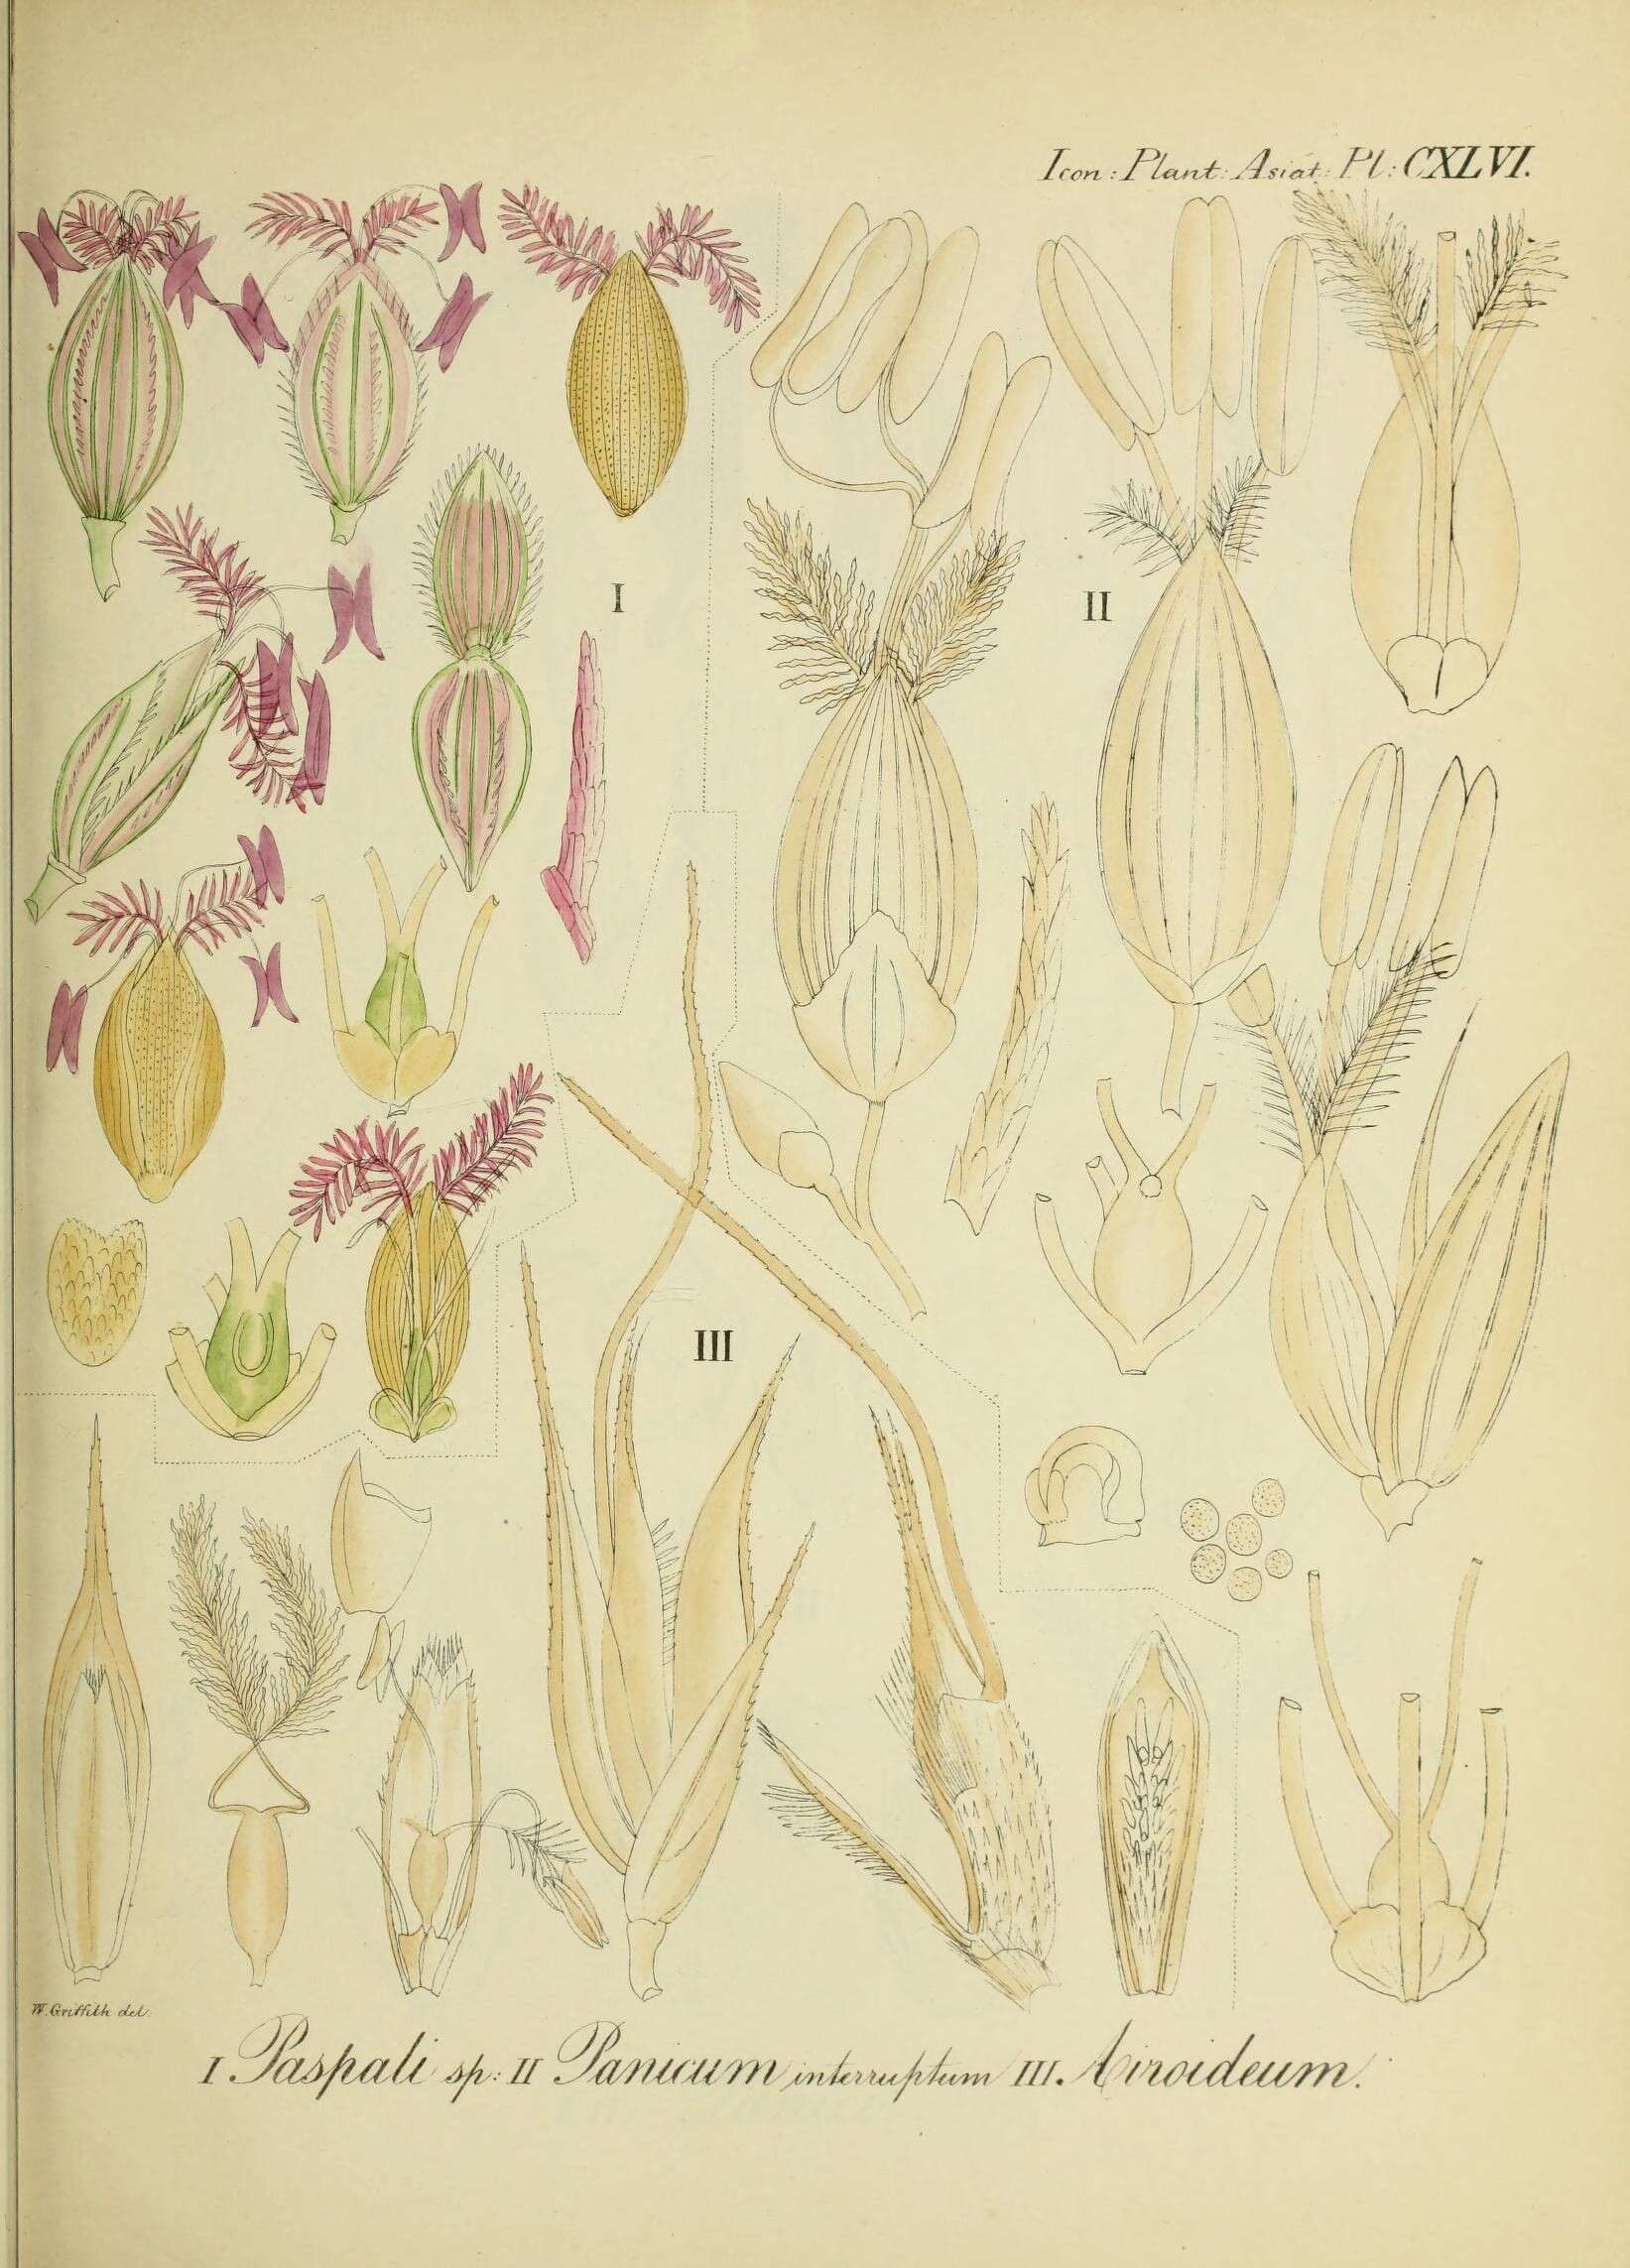 Sivun Sacciolepis interrupta (Willd.) Stapf kuva